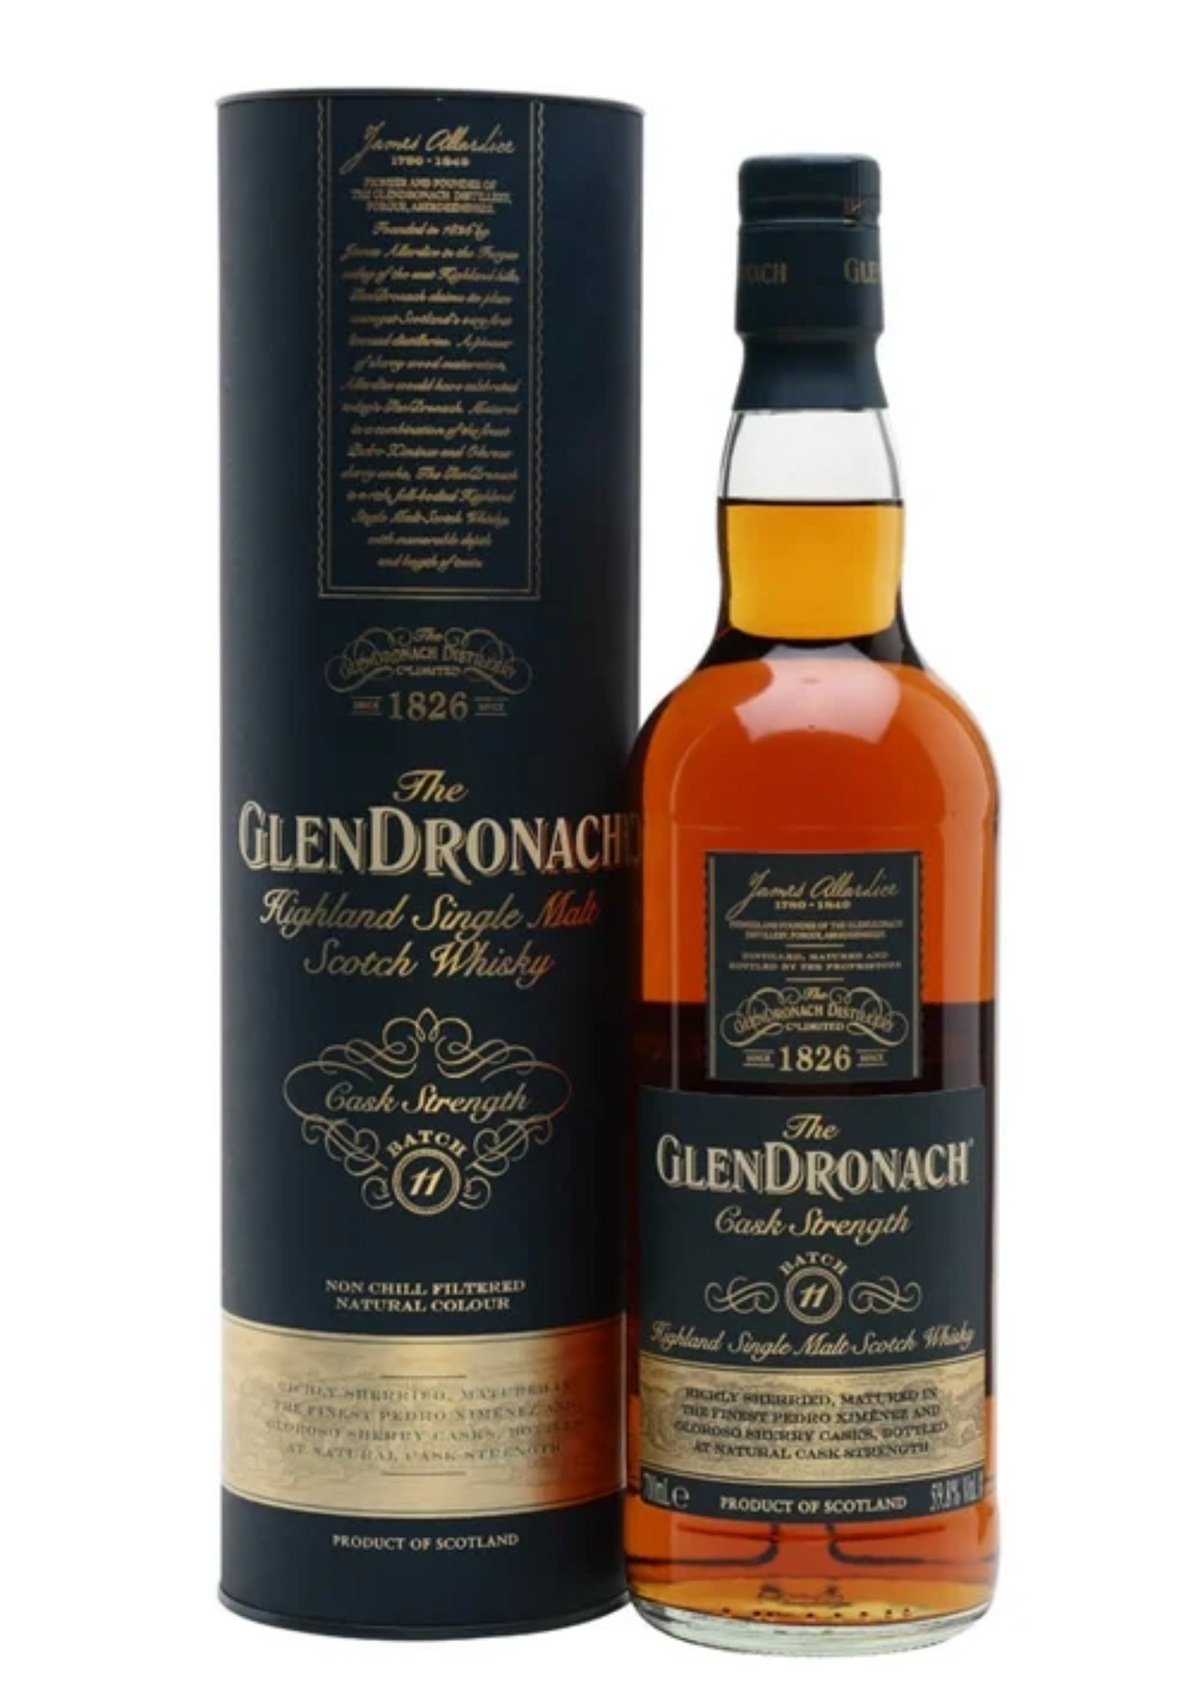 GlenDronach Cask Strength Batch 11, Single Malt Scotch Whisky, 59.8%